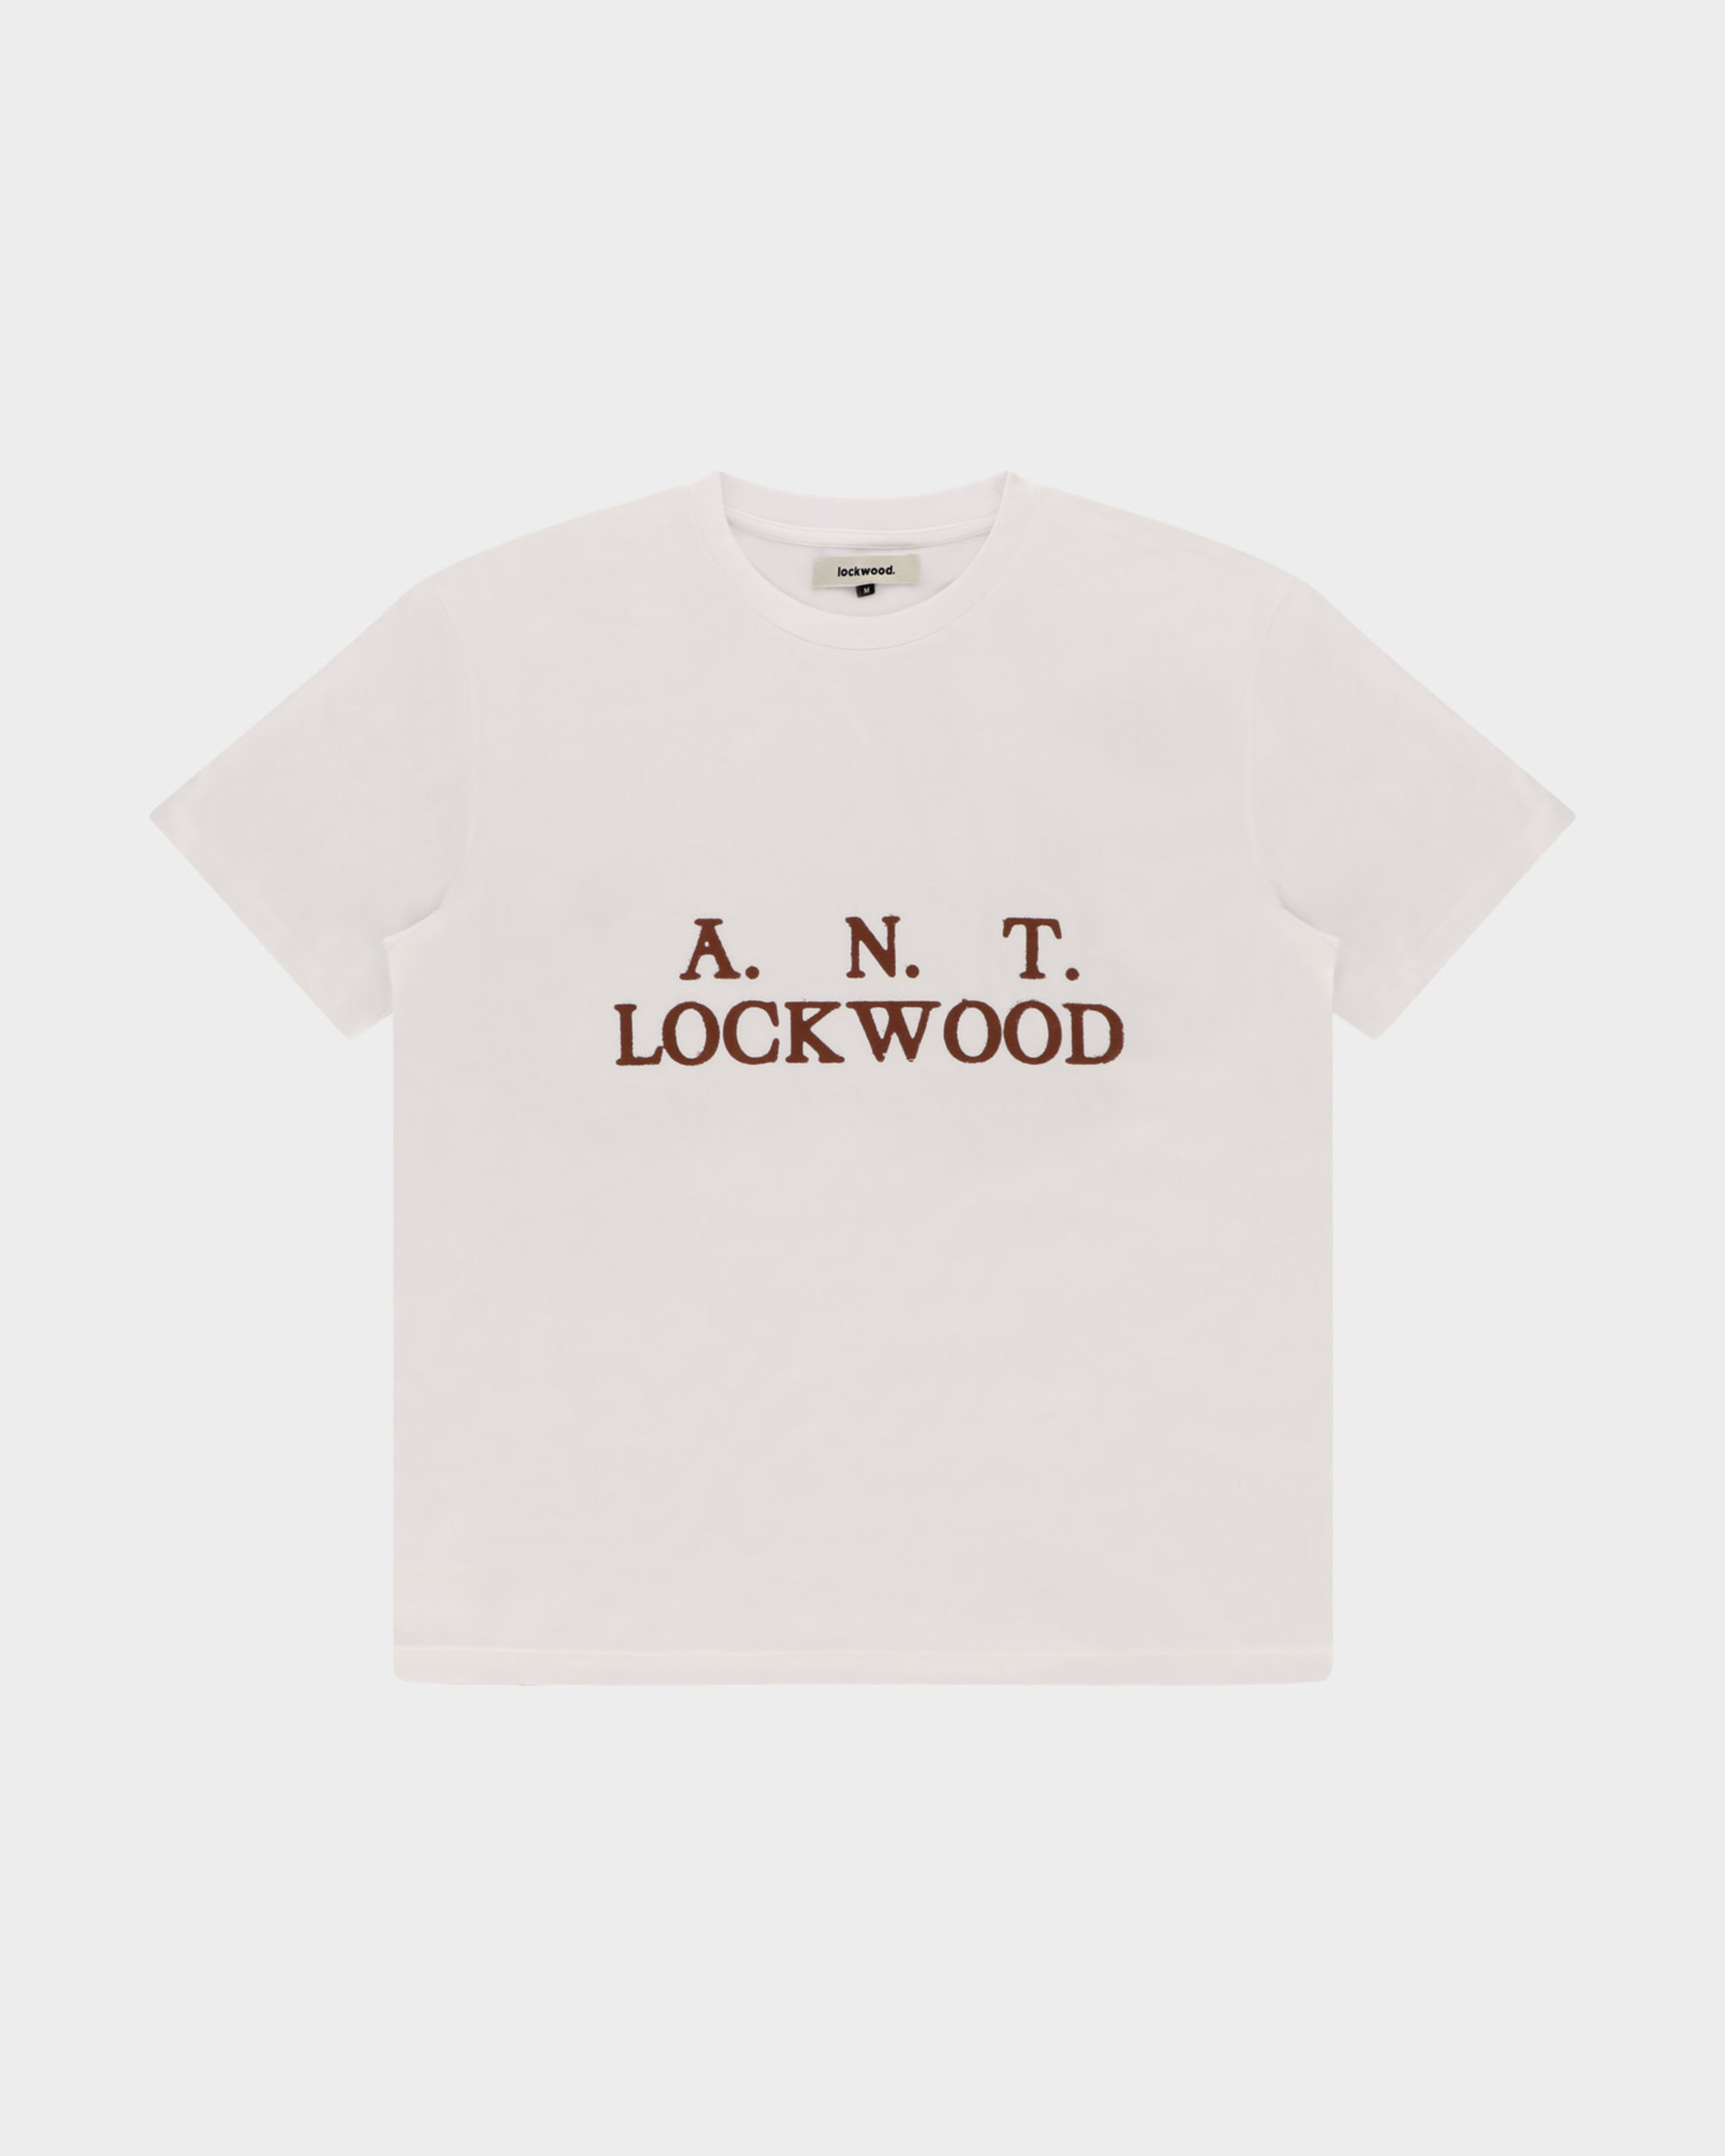 Lockwood Initials Antwerp T-Shirt White